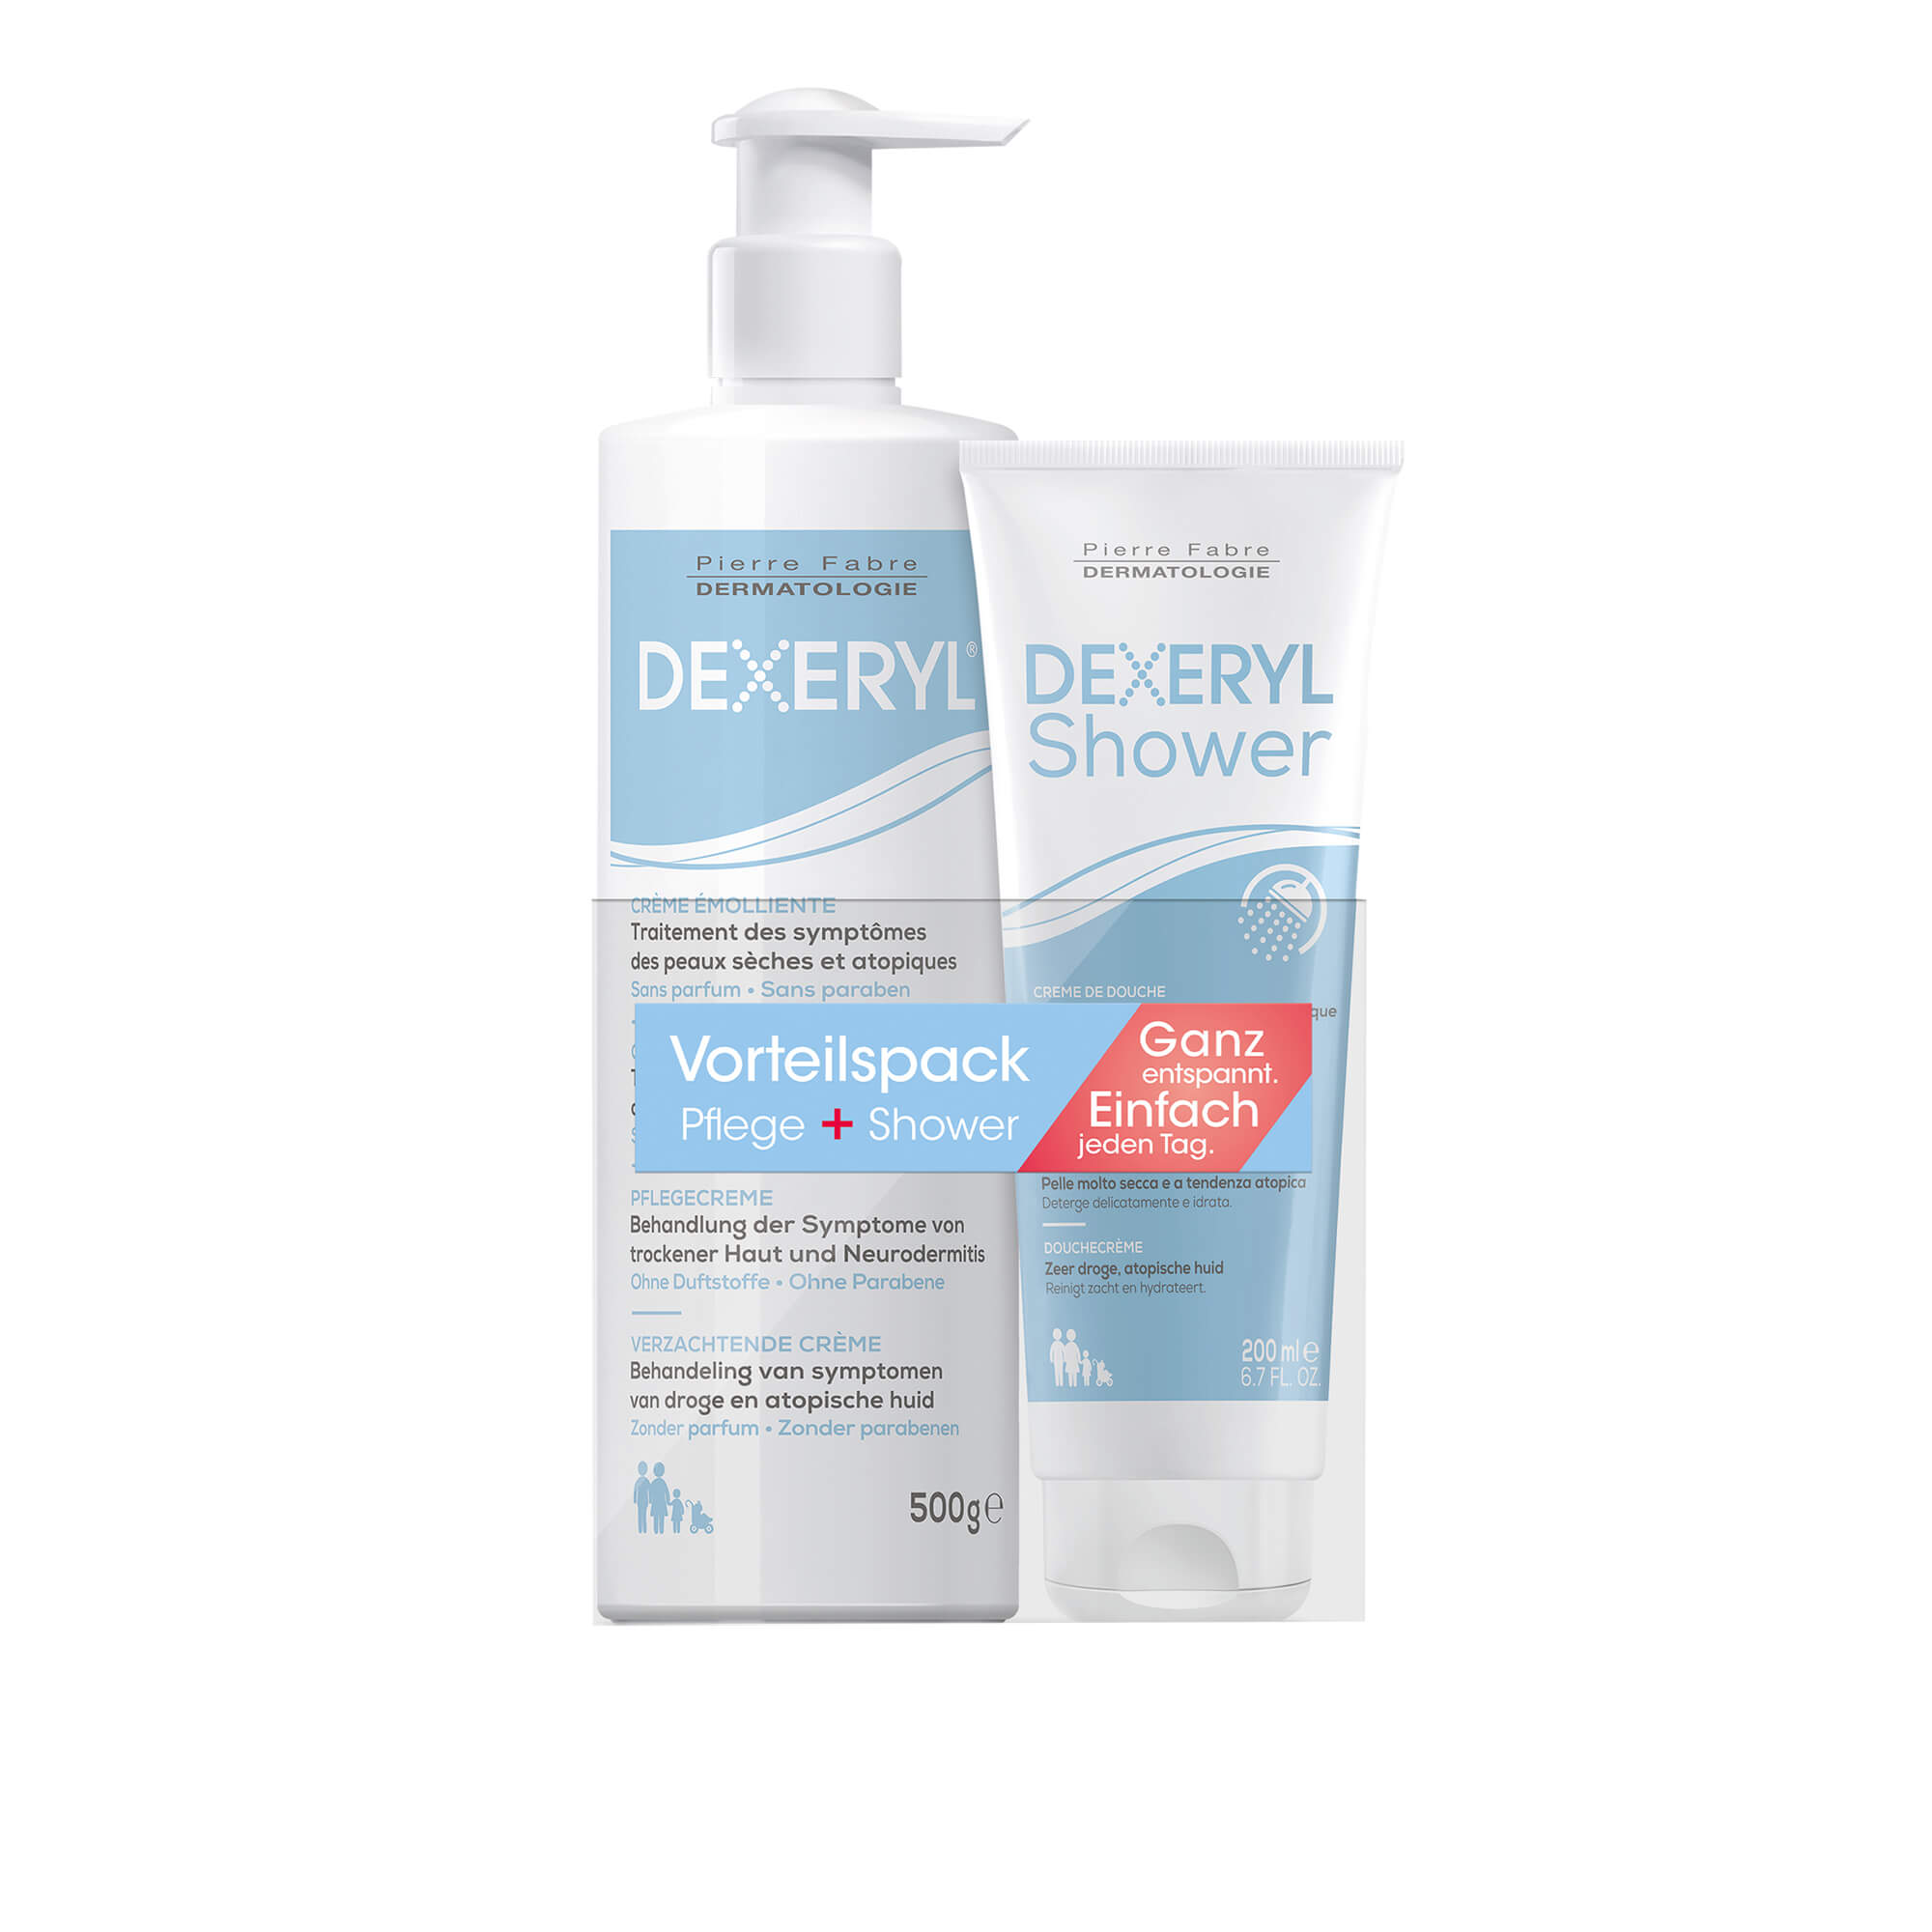 Intensivpflege bei sehr trockener Haut und Neurodermitis. Mit Dexeryl Creme und Dexeryl Shower Duschcreme.